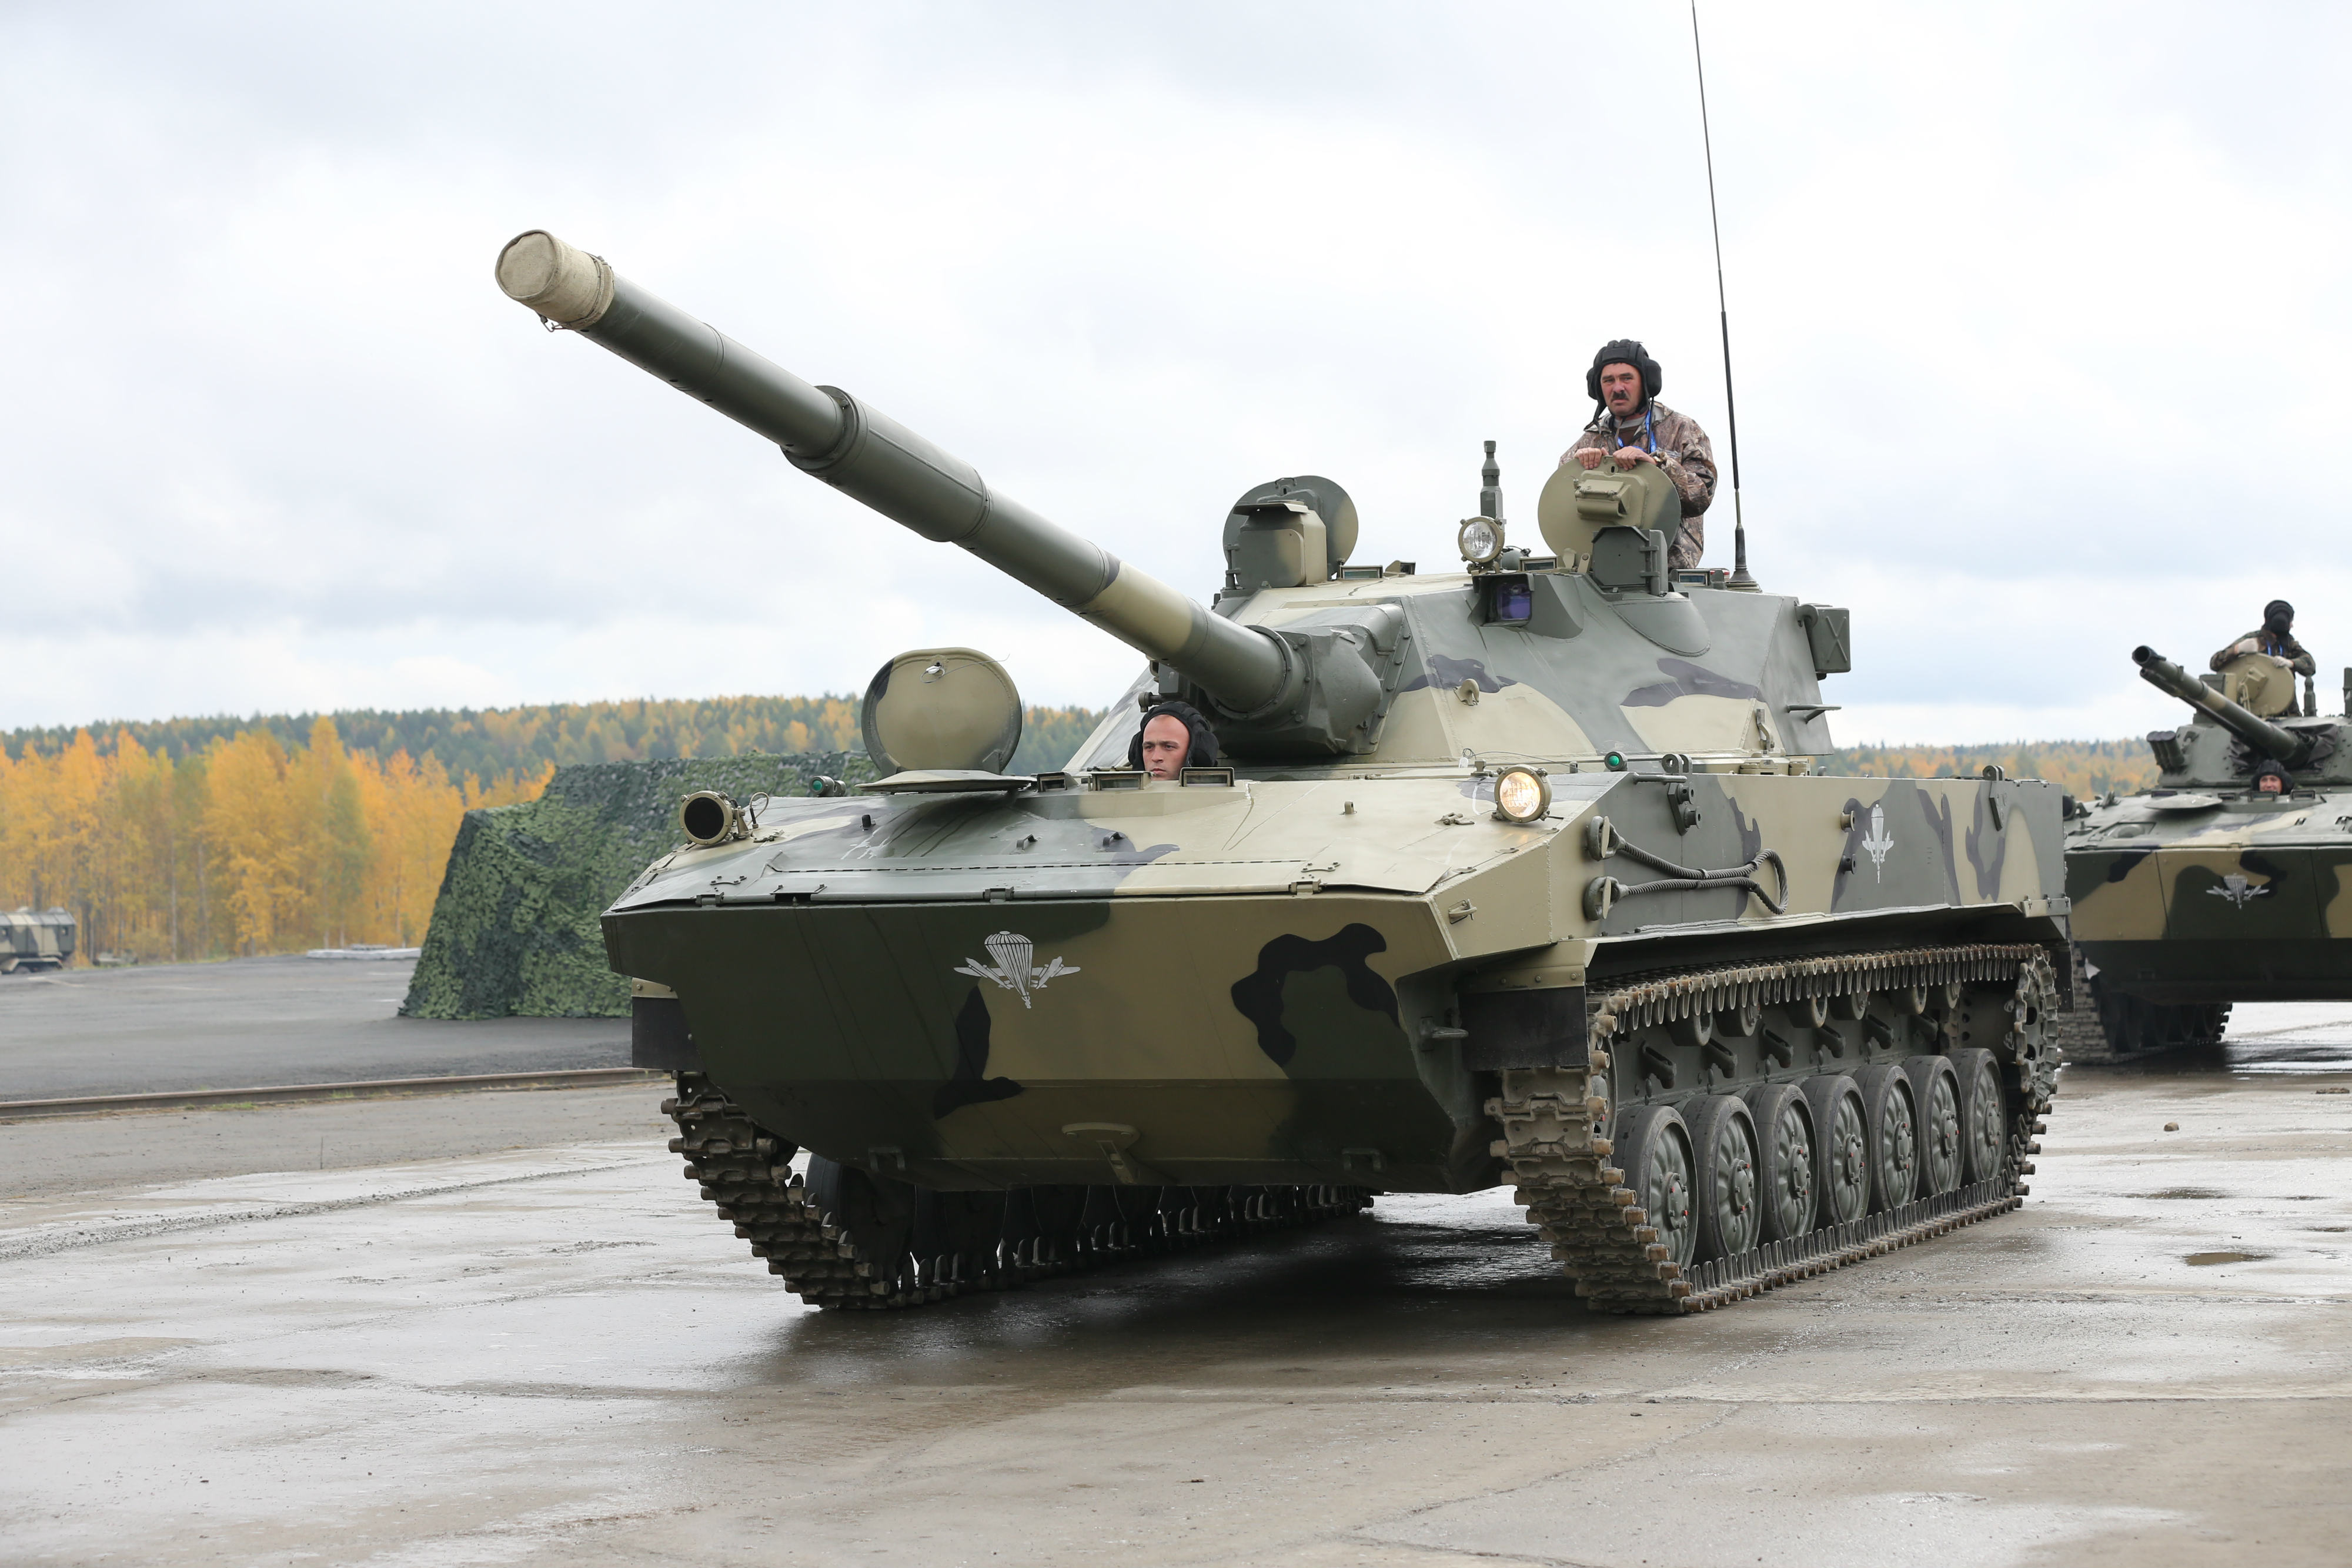 istrebiteli-tankov-armored-warfare-8